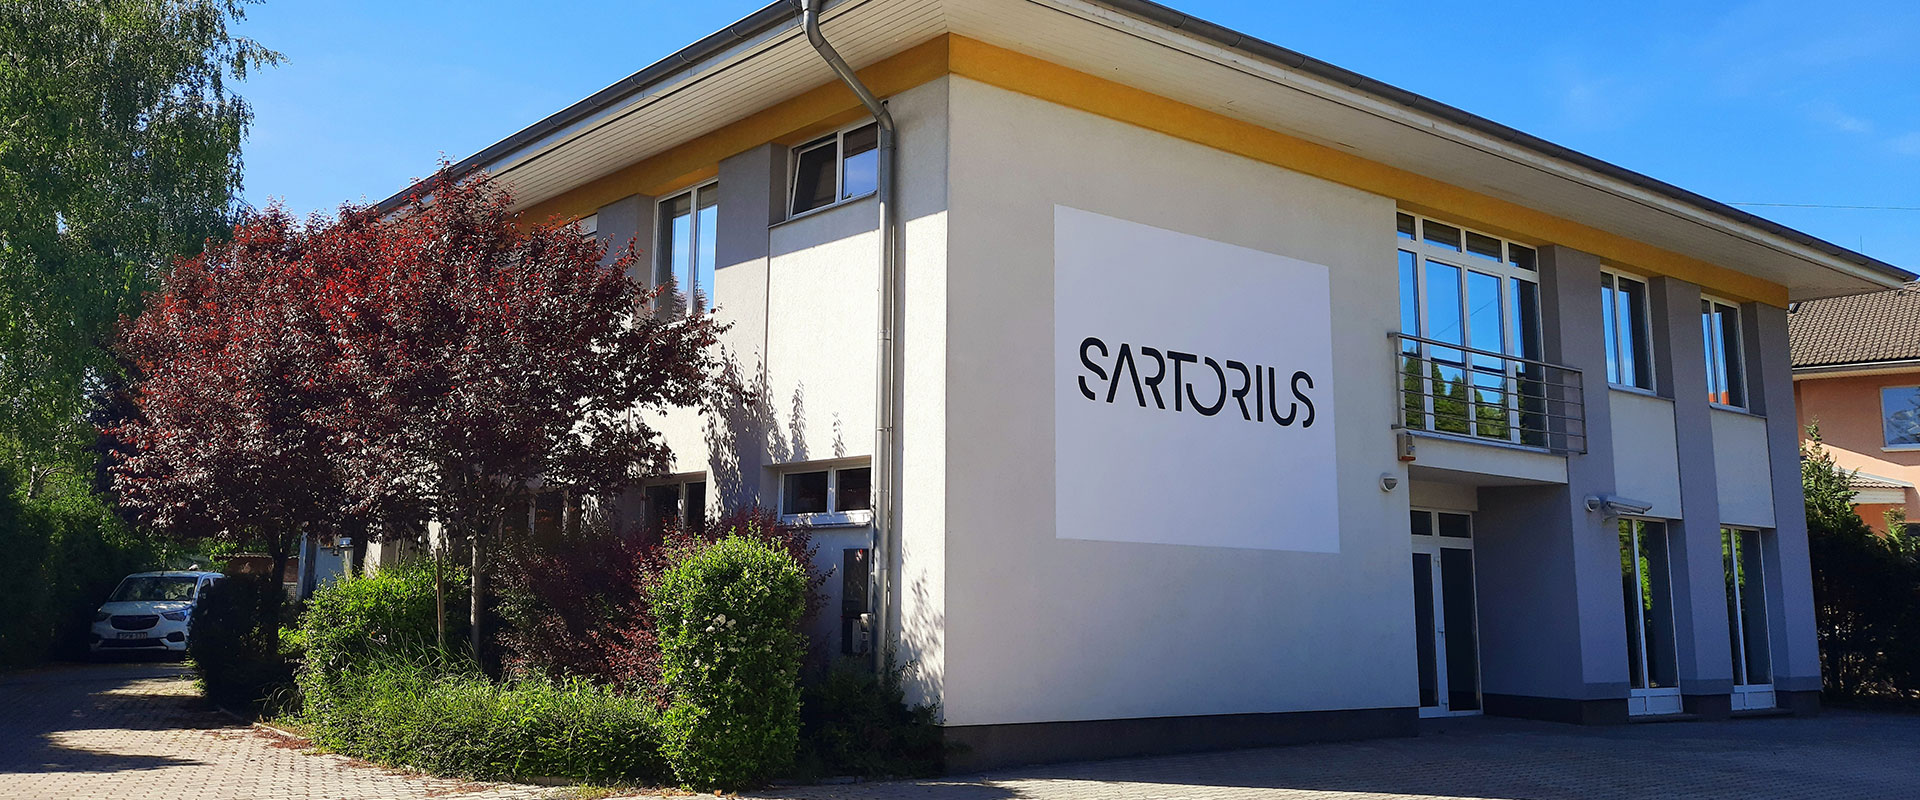 Üdvözöljük a Sartorius oldalán